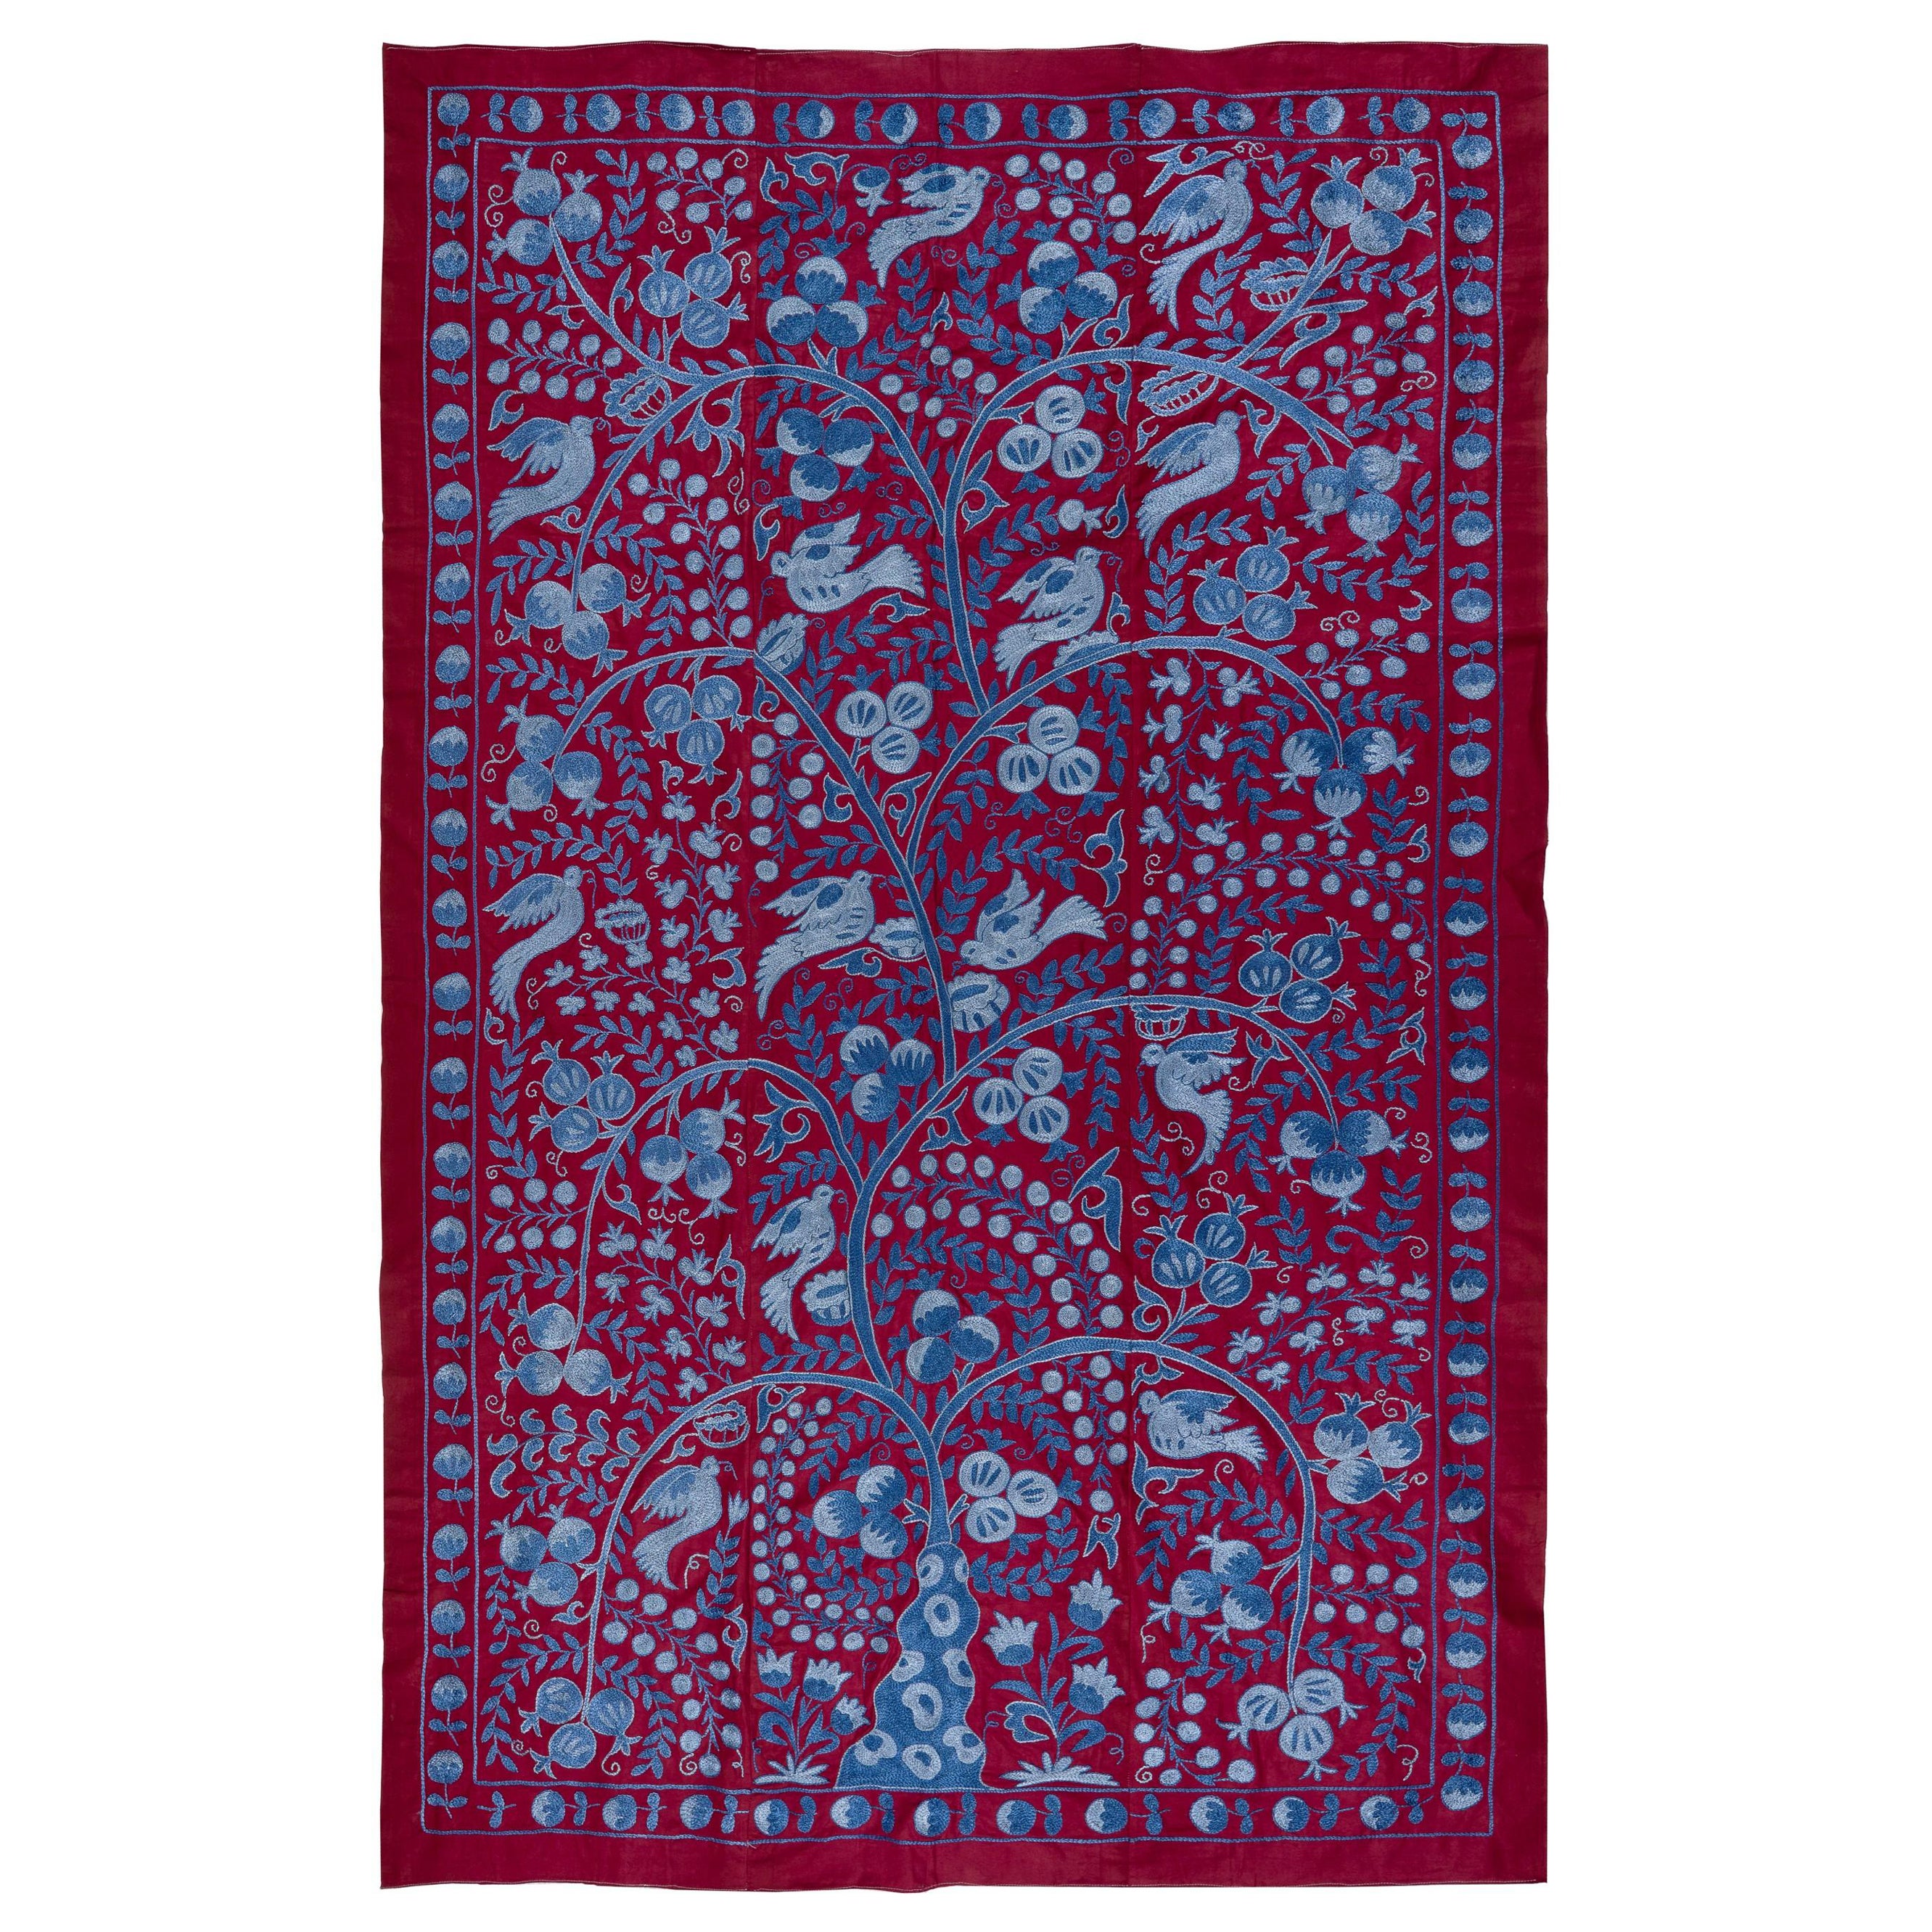 Nouveau tissu de table Suzani ouzbek brodé en coton et soie de 4,6 x 7 pieds